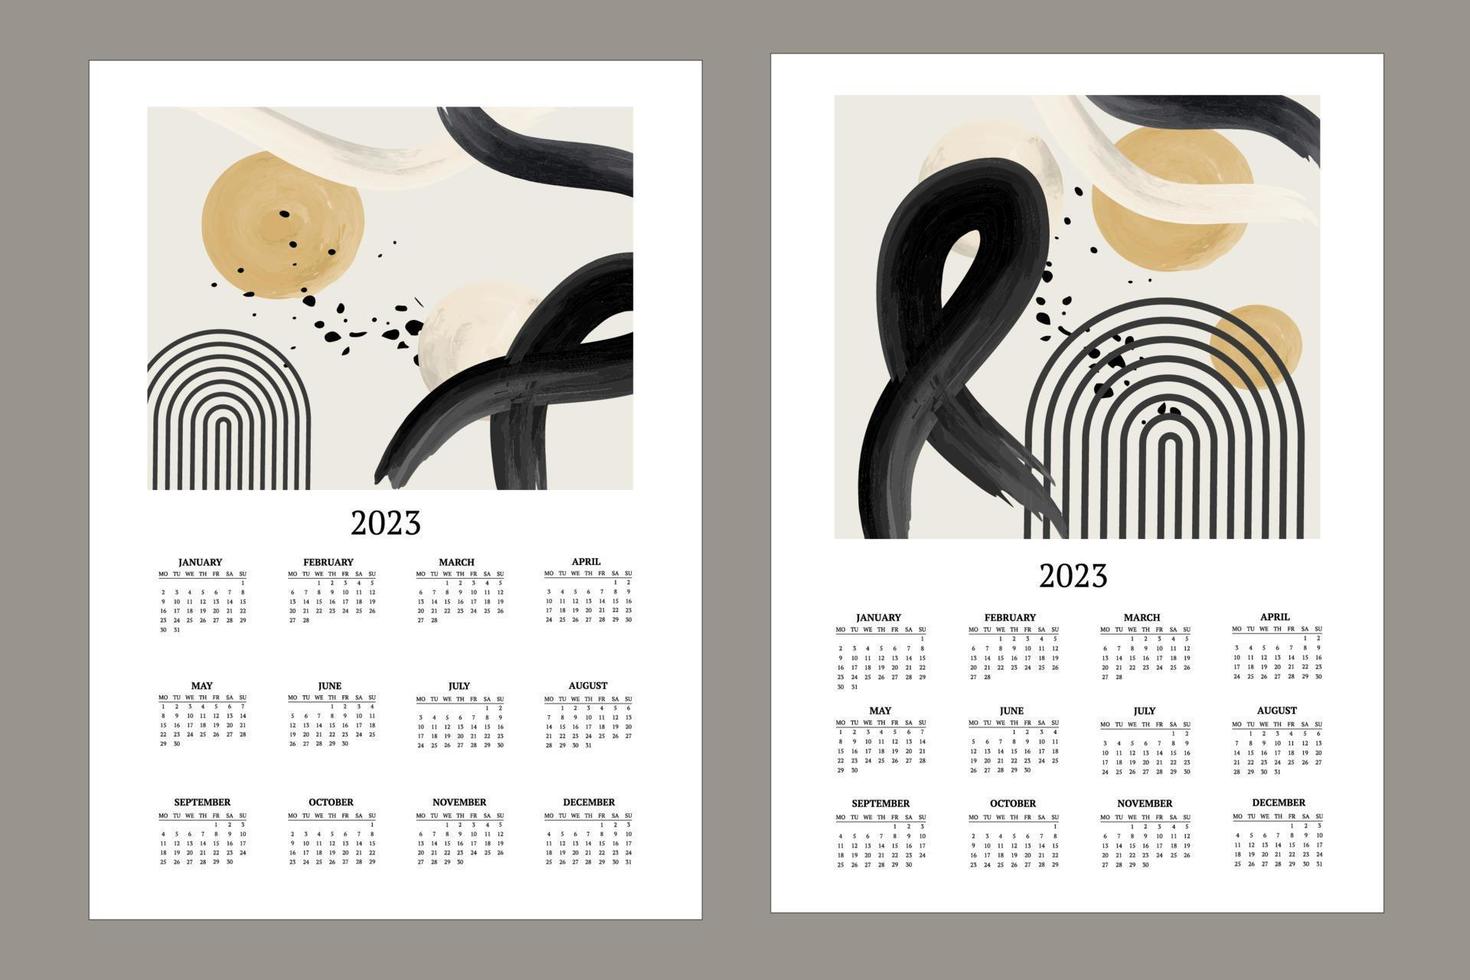 klassisk månadskalender för 2023. kalender med abstrakta former, svartvita penslar, gult och cirklar. vektor